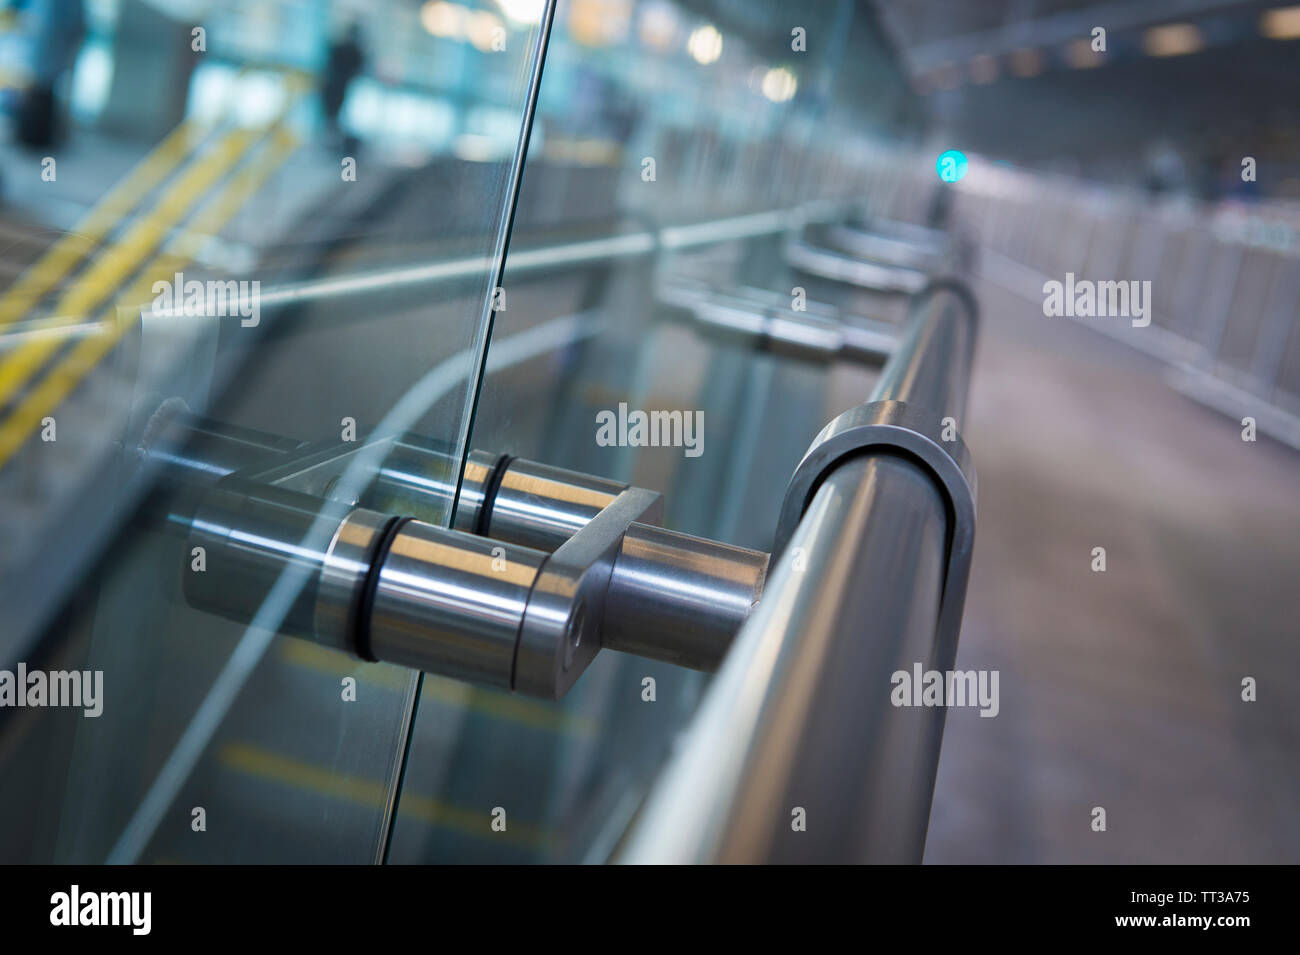 Detalle de riel metálico sobre una plataforma en la estación de Blackfriars de Londres, Londres, Inglaterra. Foto de stock